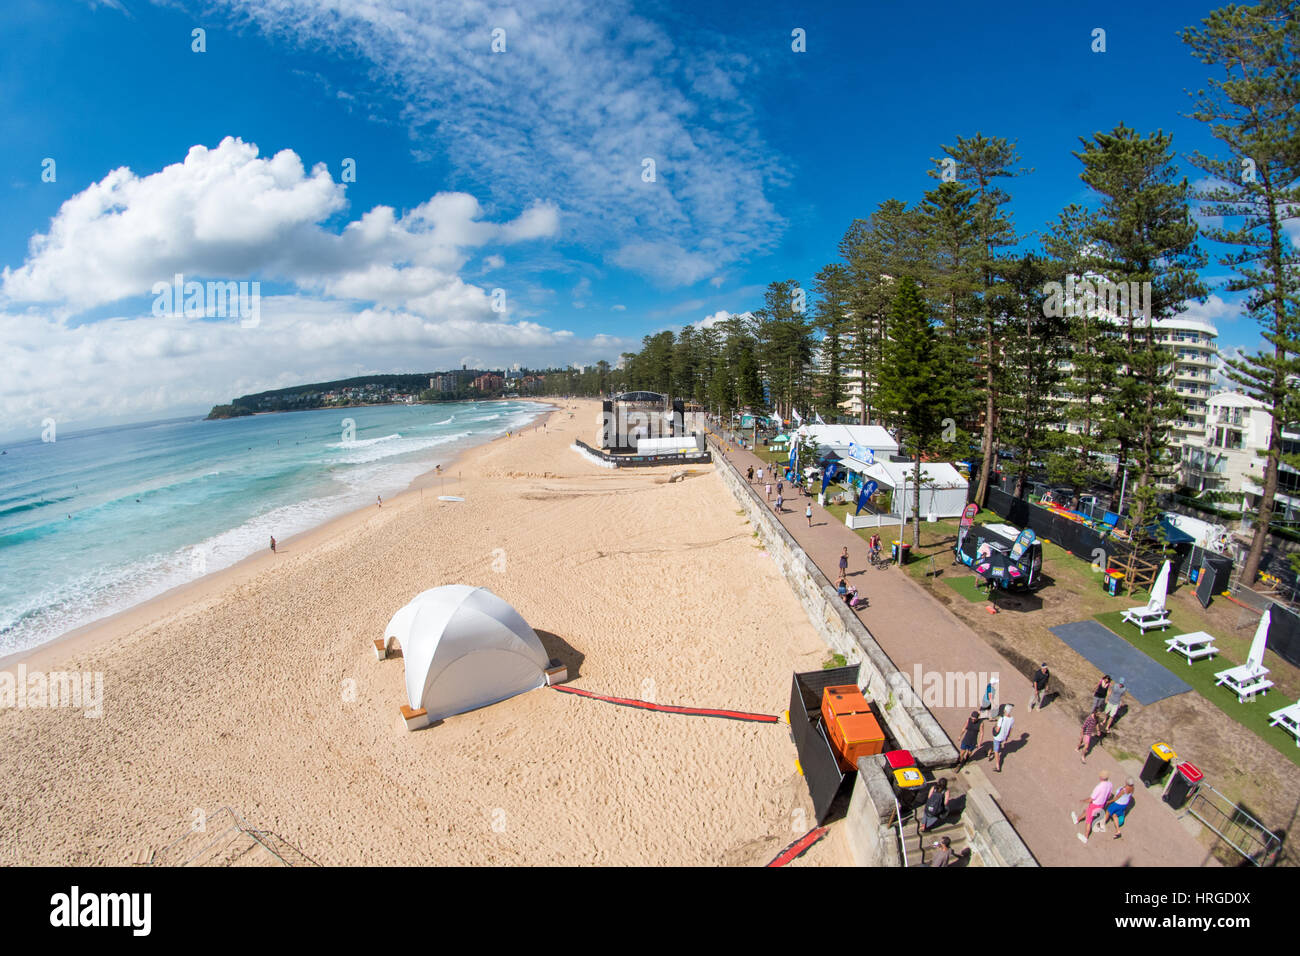 Sydney, Australia - 02 de marzo de 2017: El Abierto de Australia de surf evento deportivo en Manly Beach, Australia con el surf, BMX, patinaje y música. La foto es la playa de Manly. Crédito: mjmediabox/Alamy Live News Foto de stock